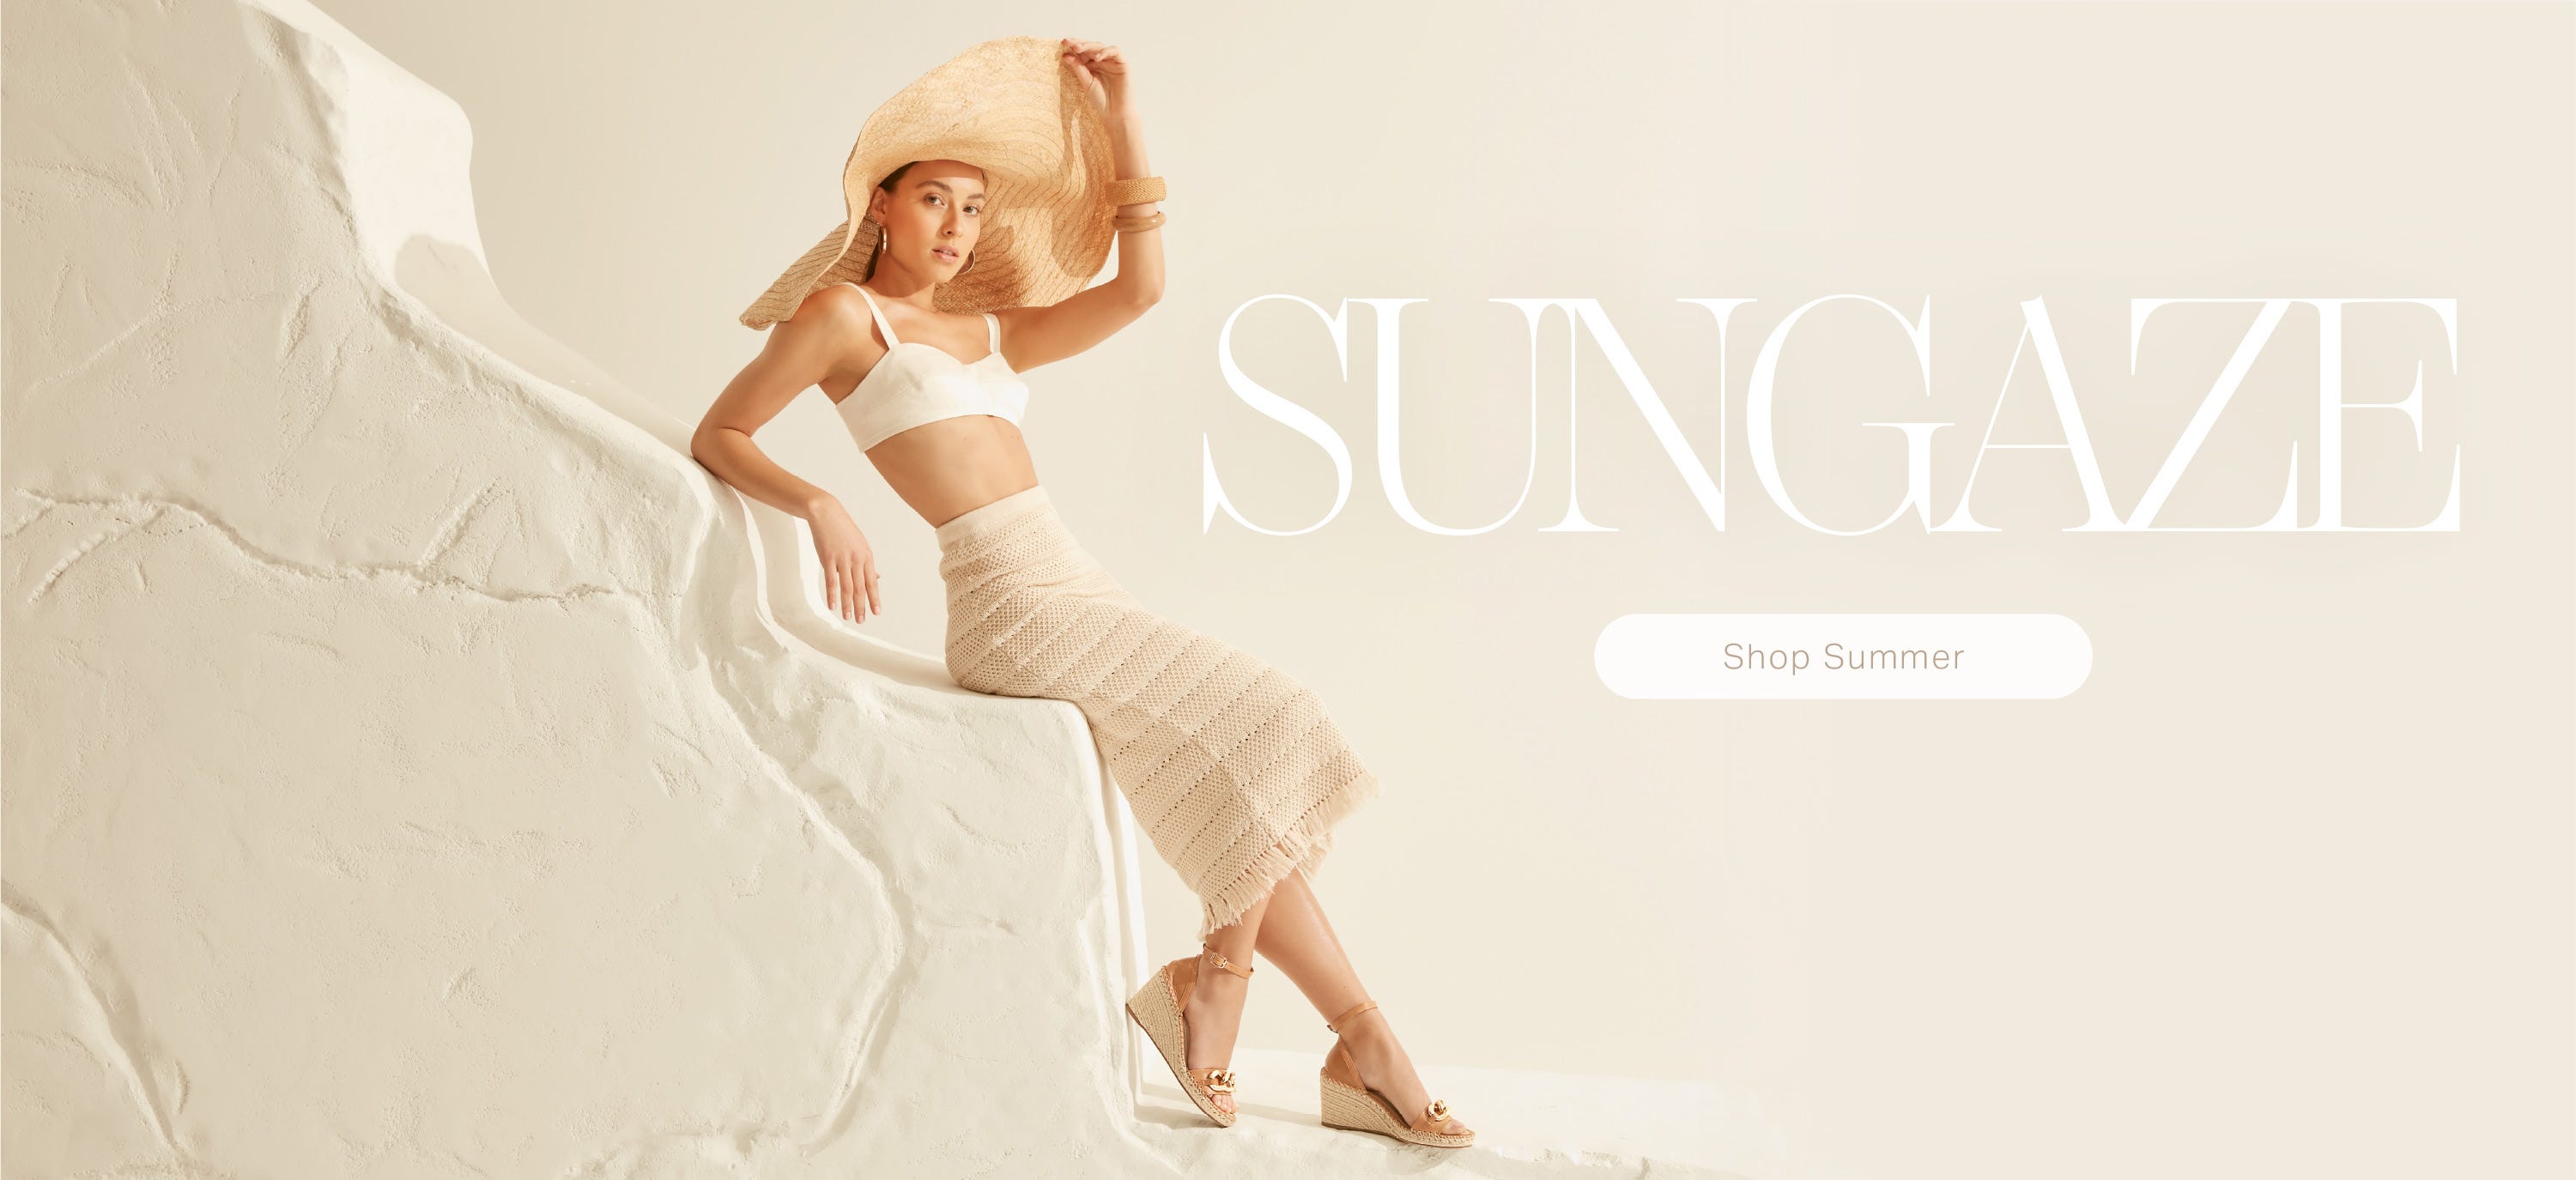 Midas Sungaze | shop summer new arrivals